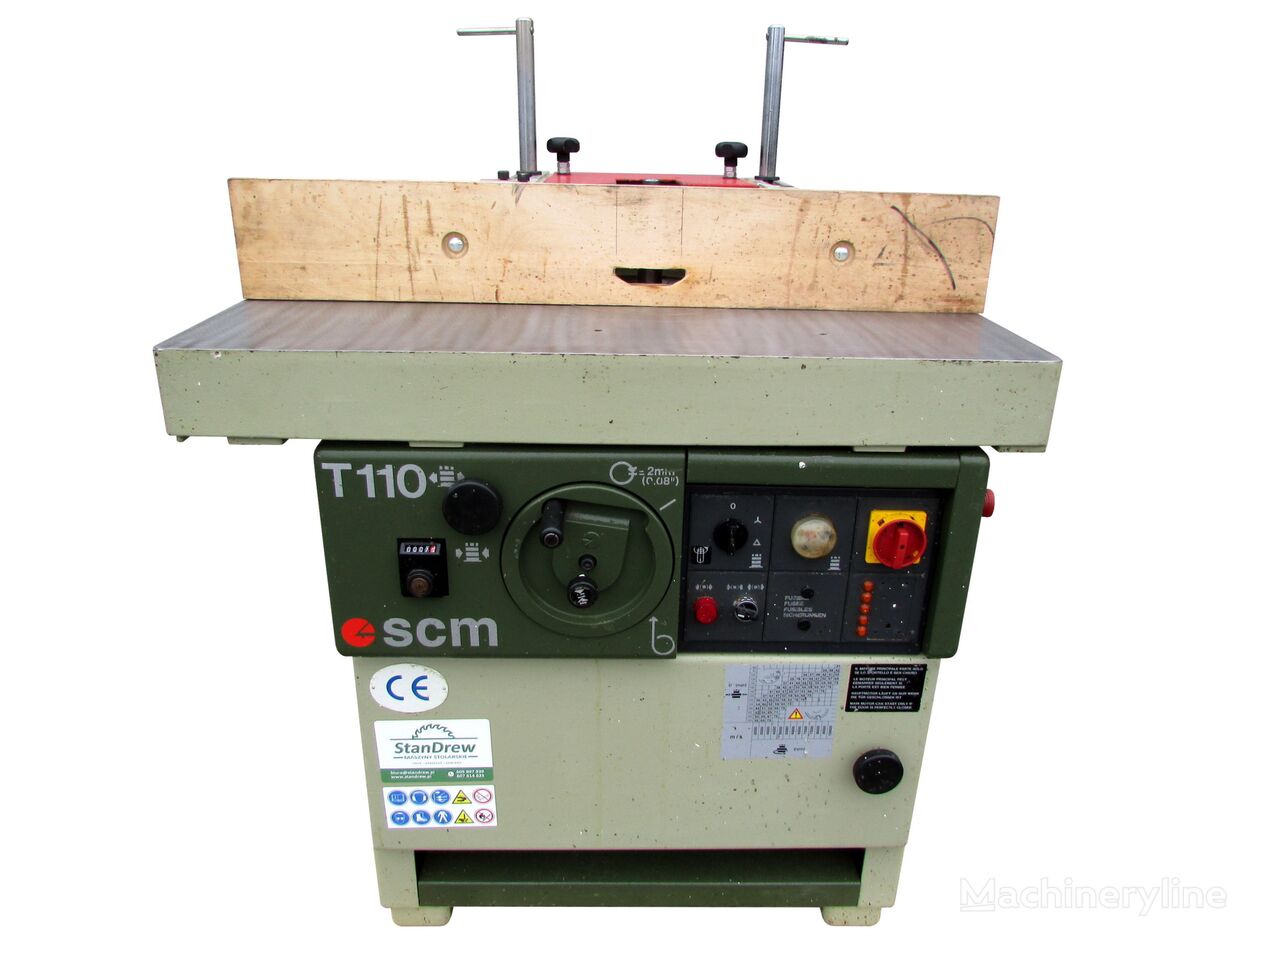 Frezarka dolnowrzecionowa SCM T 110 wood milling machine